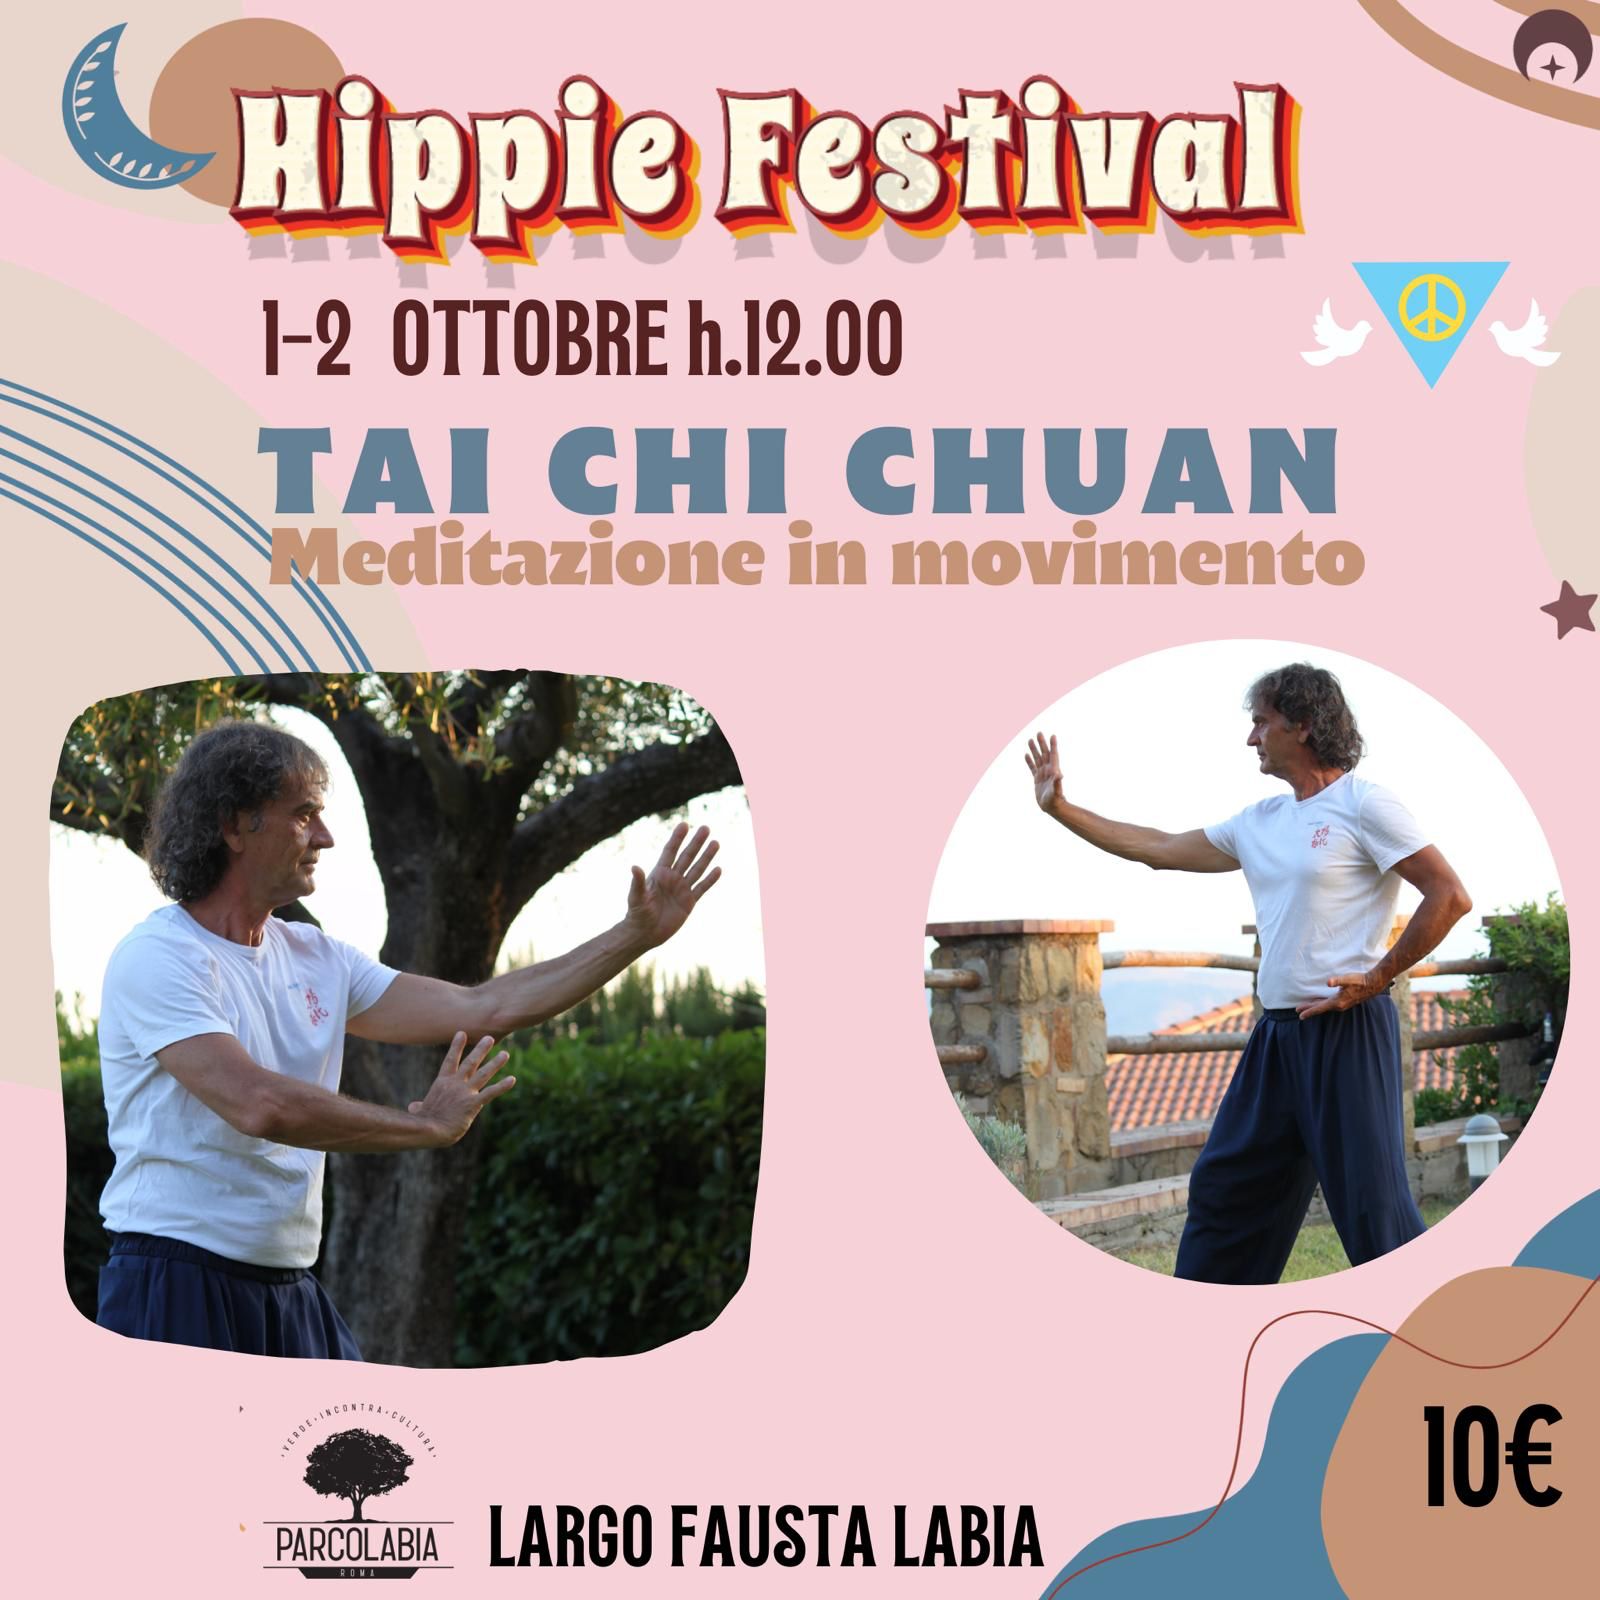 Hippie Festival - Tai Chi Chuan